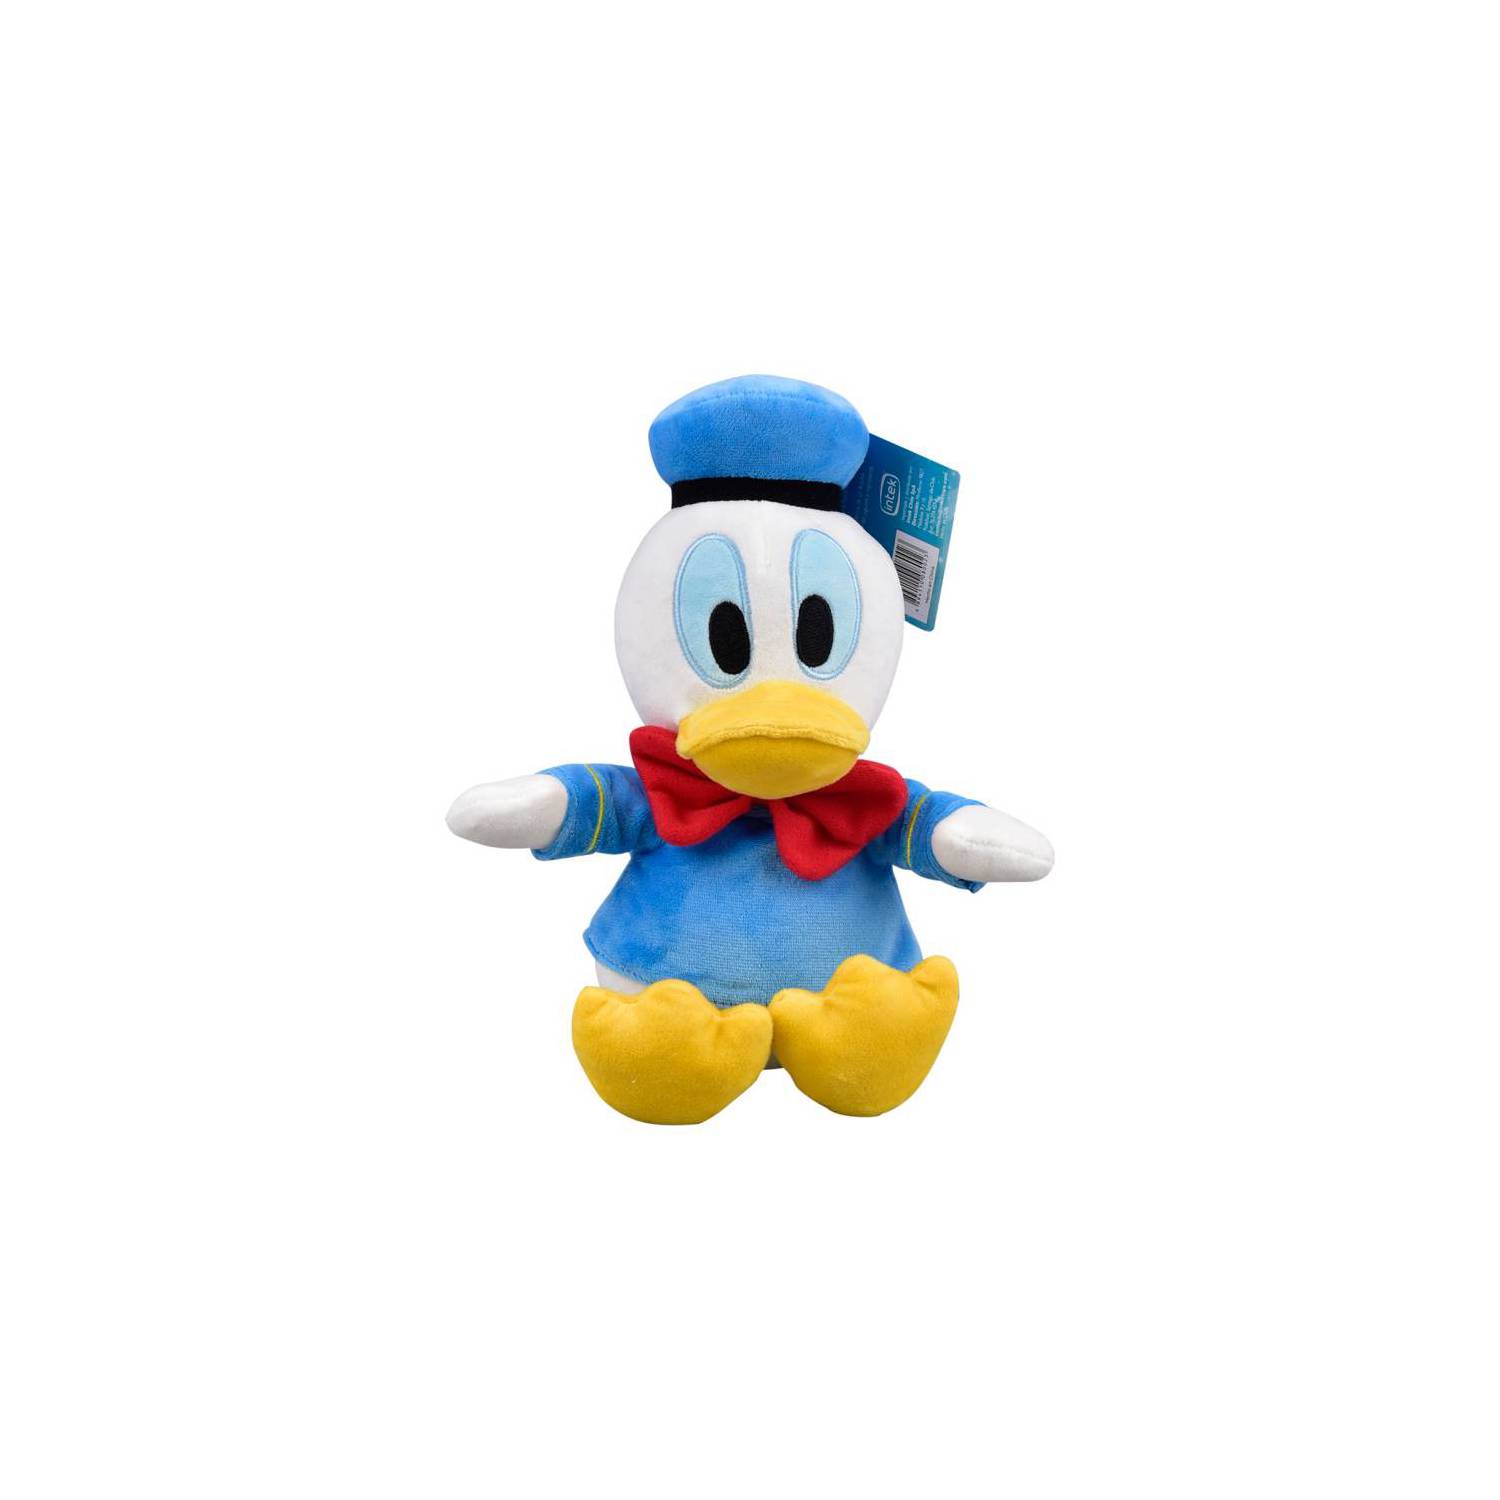 Peluche grande Pato Donald, Disney Store